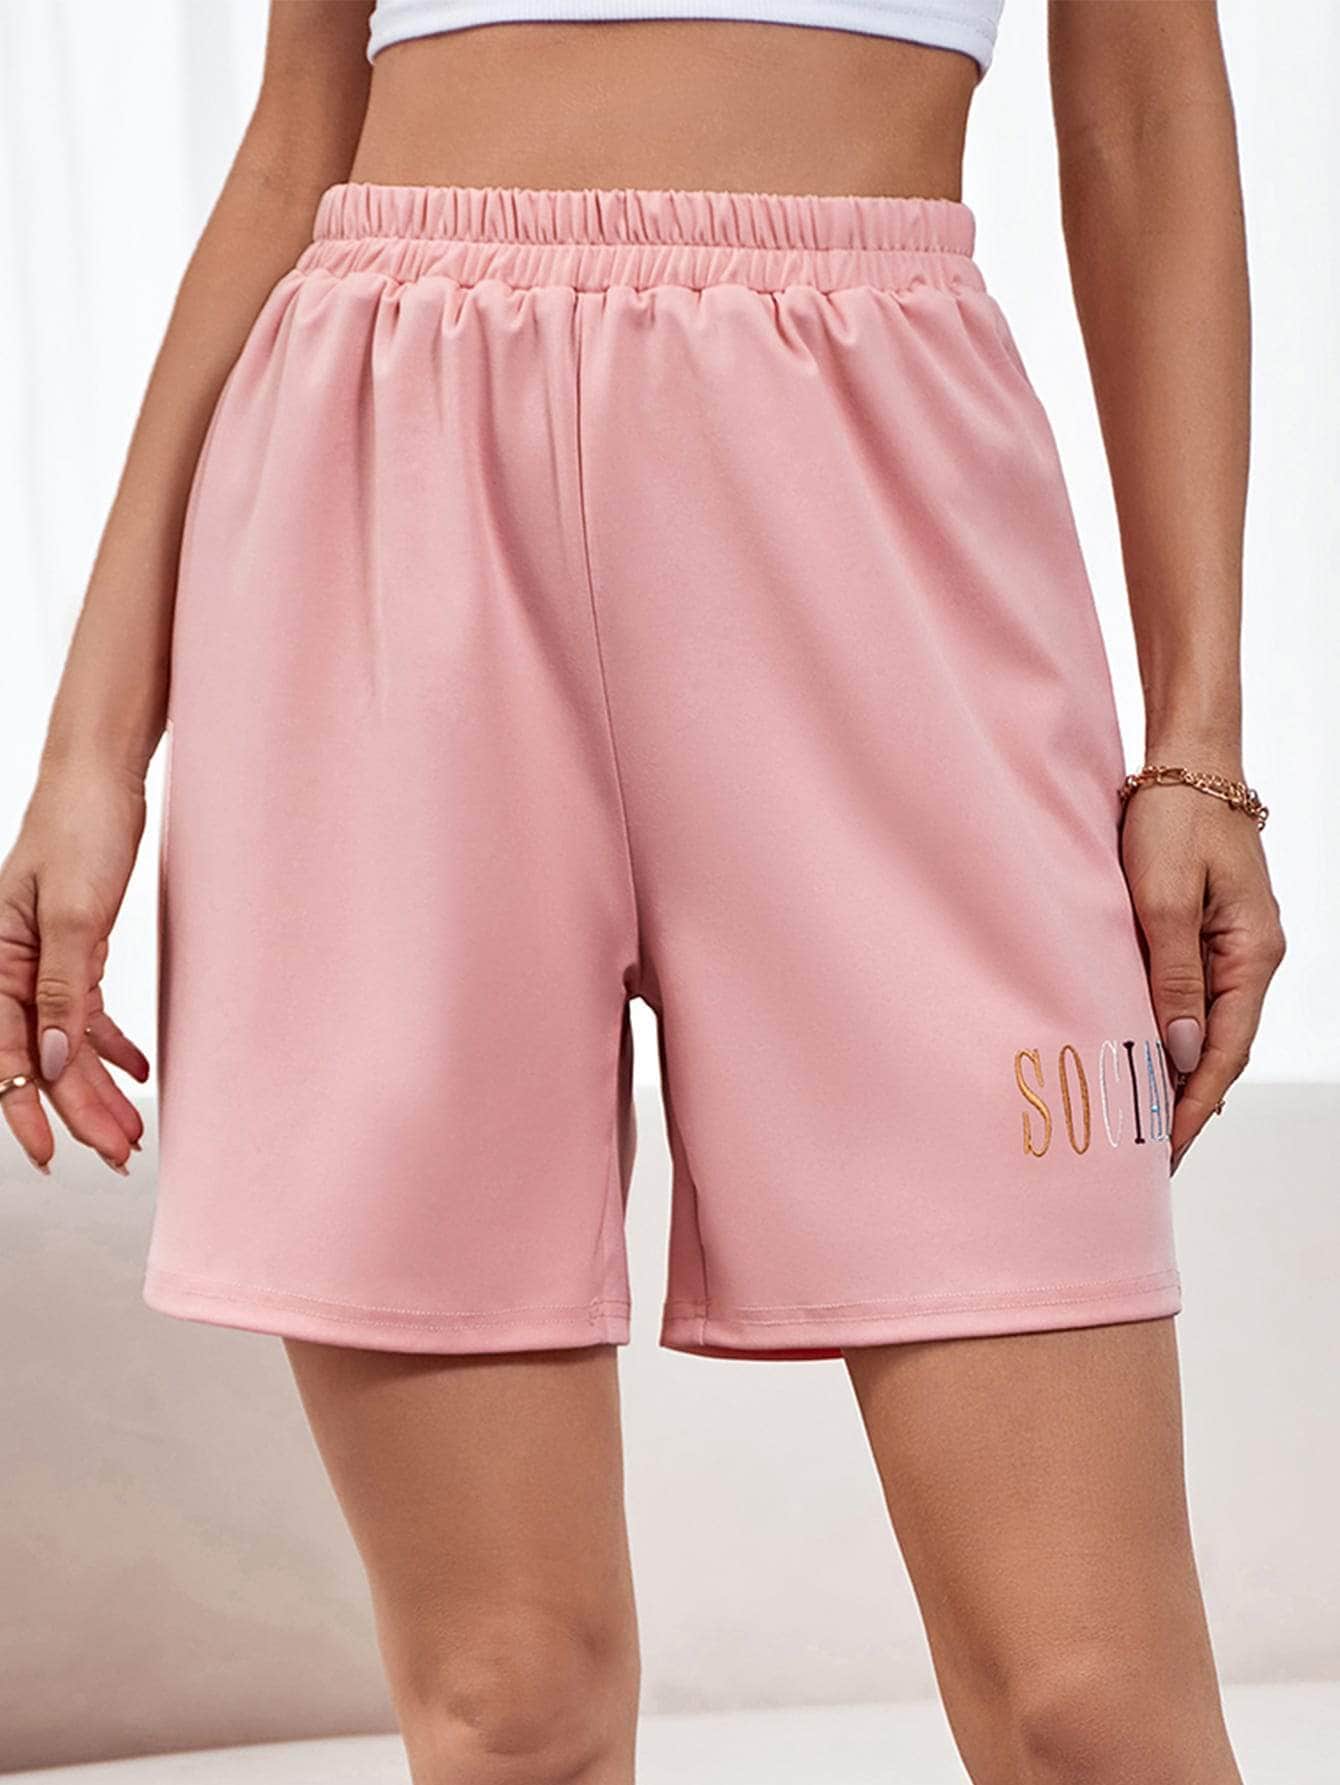 Rosa / S Shorts track con bordado de letra